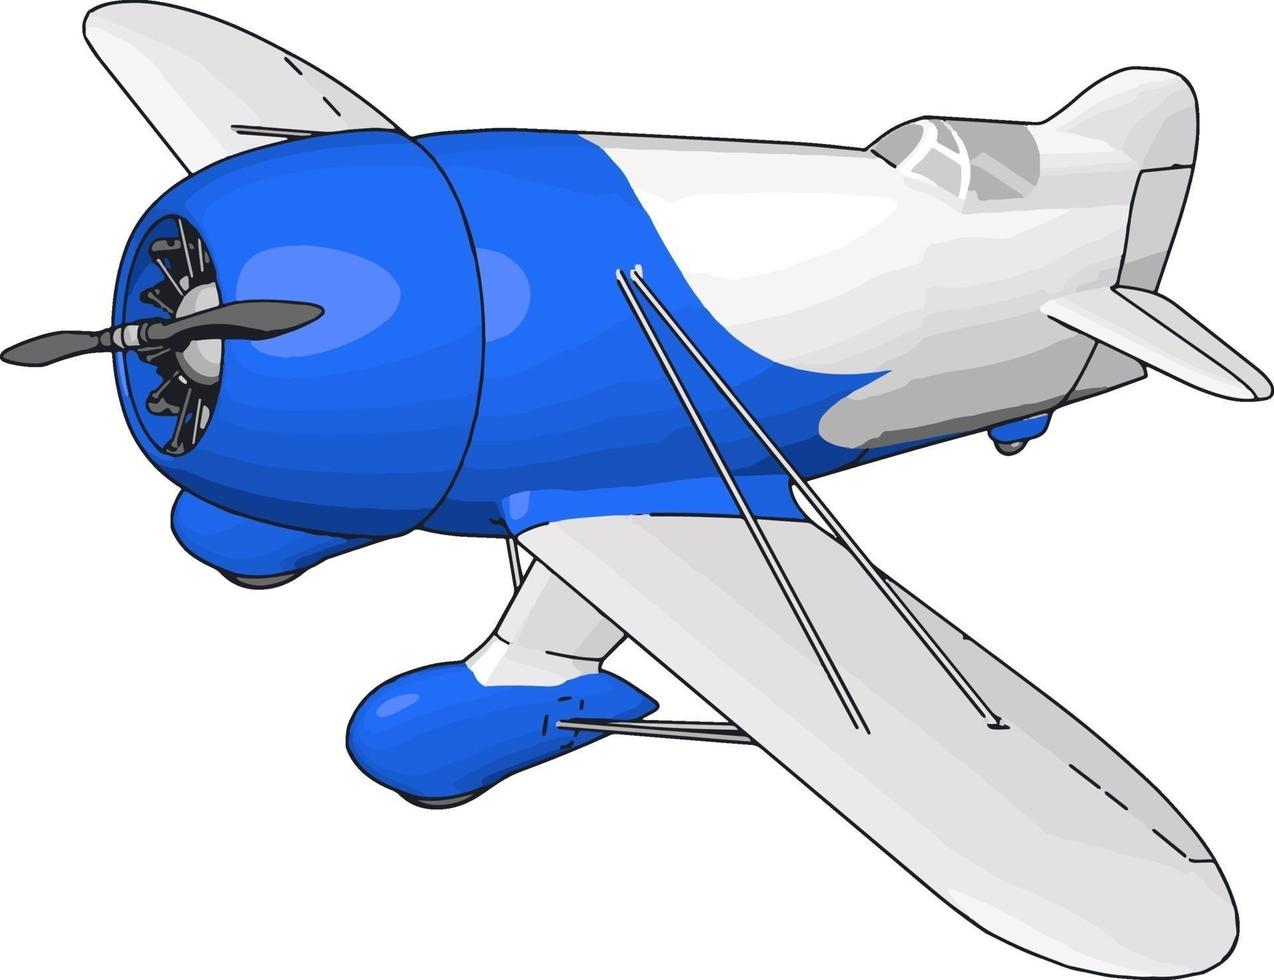 avião retrô velho branco e azul, ilustração, vetor em fundo branco.